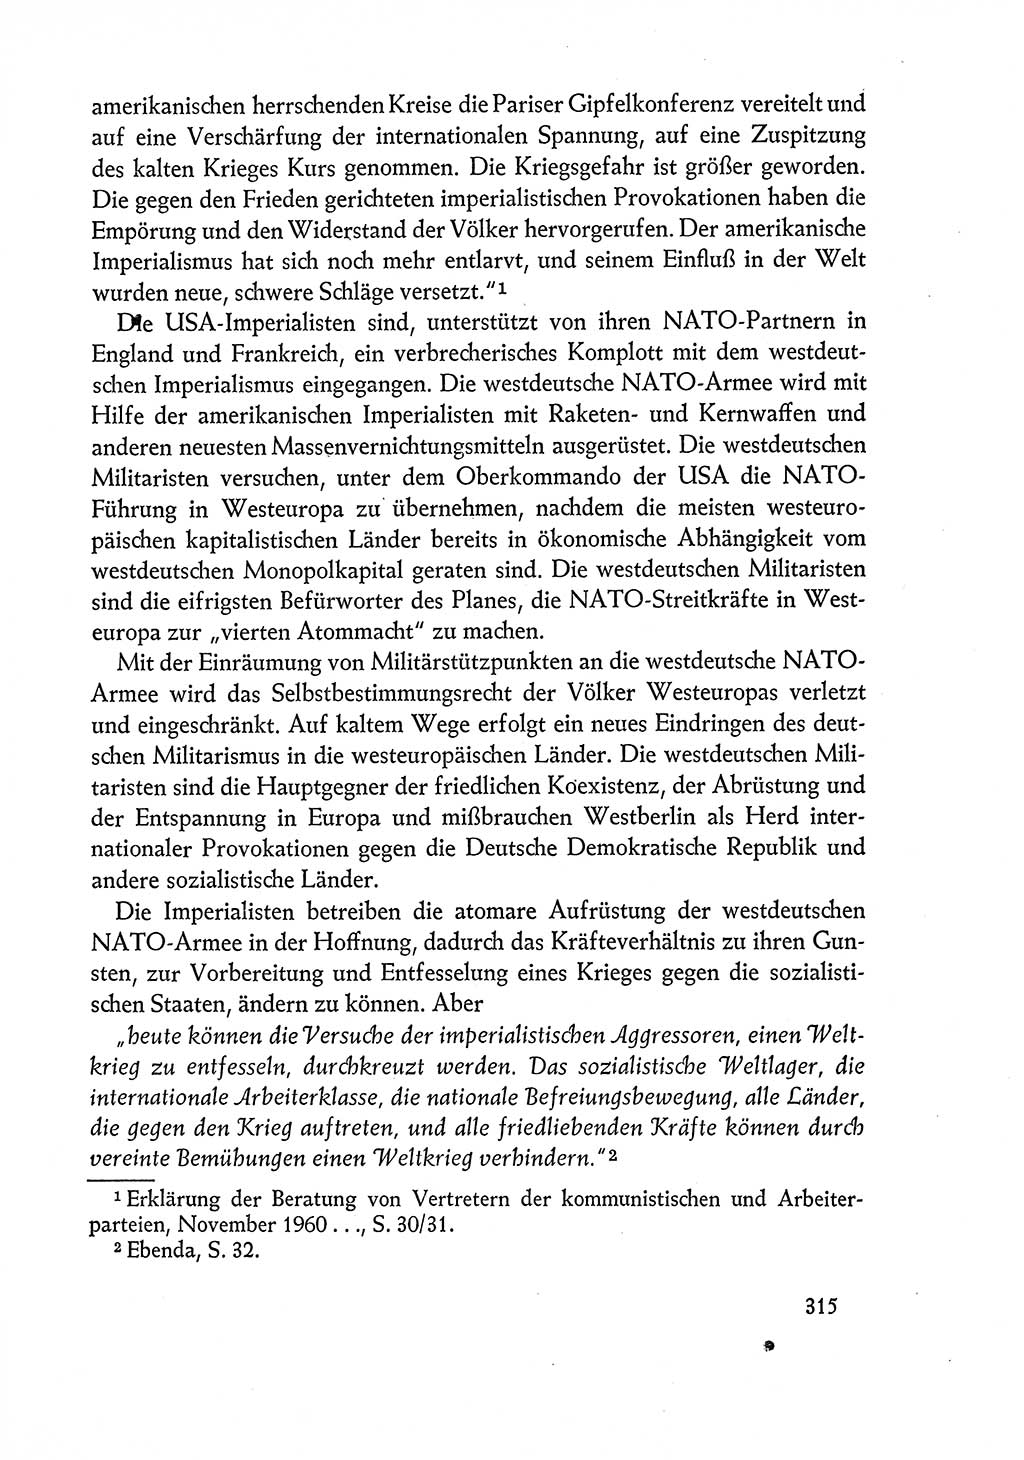 Dokumente der Sozialistischen Einheitspartei Deutschlands (SED) [Deutsche Demokratische Republik (DDR)] 1960-1961, Seite 315 (Dok. SED DDR 1960-1961, S. 315)